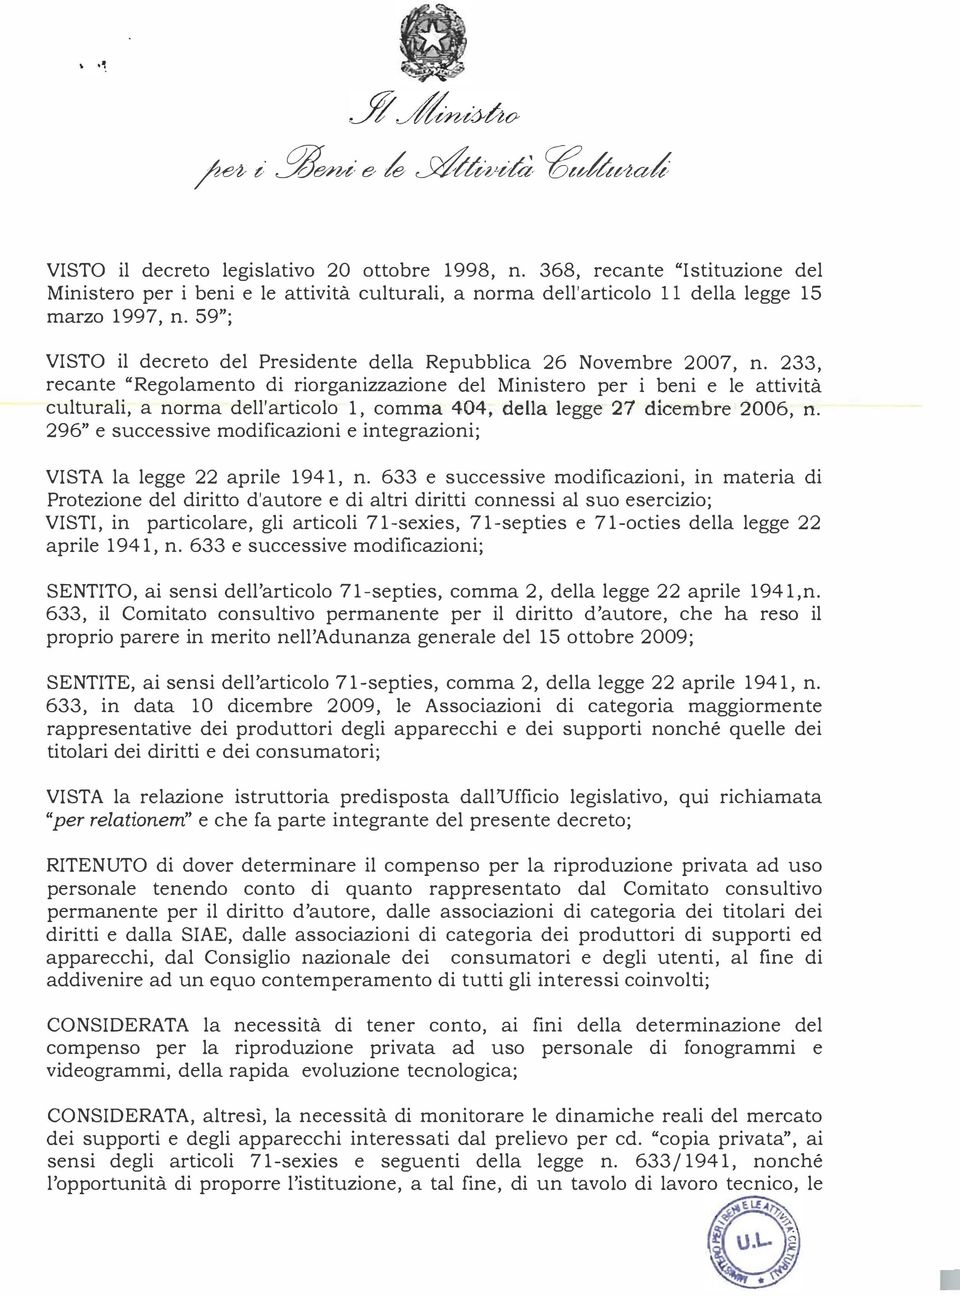 59"; VISTO il decreto del Presidente della Repubblica 26 Novembre 2007, n.